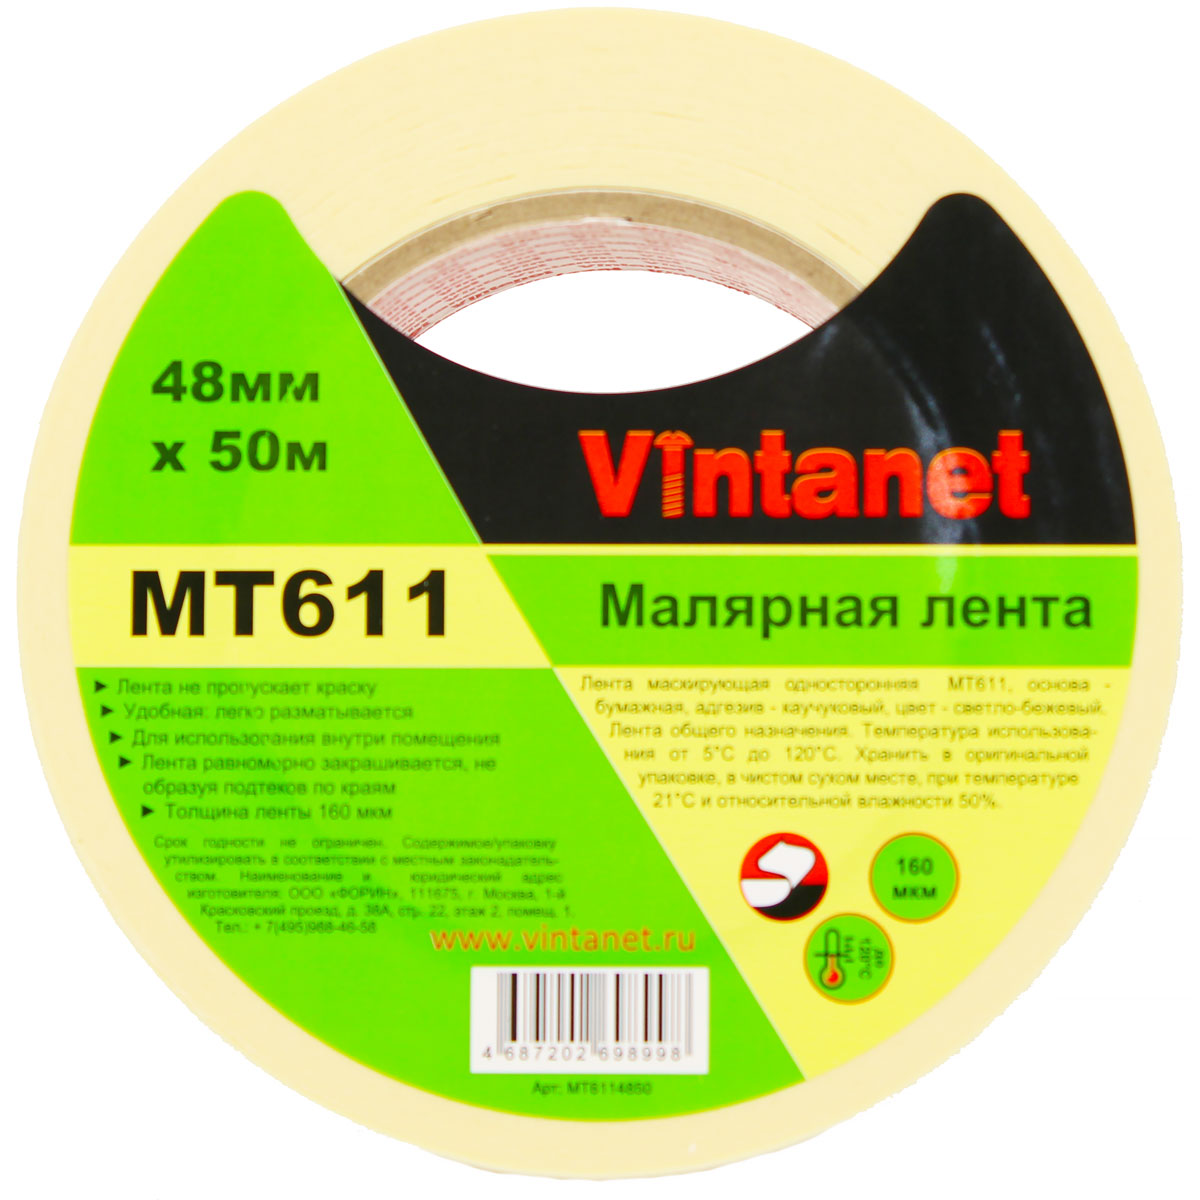 Лента малярная высокотемпературная Vintanet MT611, 120 С, 160 мкм, 48мм х 50м, MT6114850 малярная лента arch